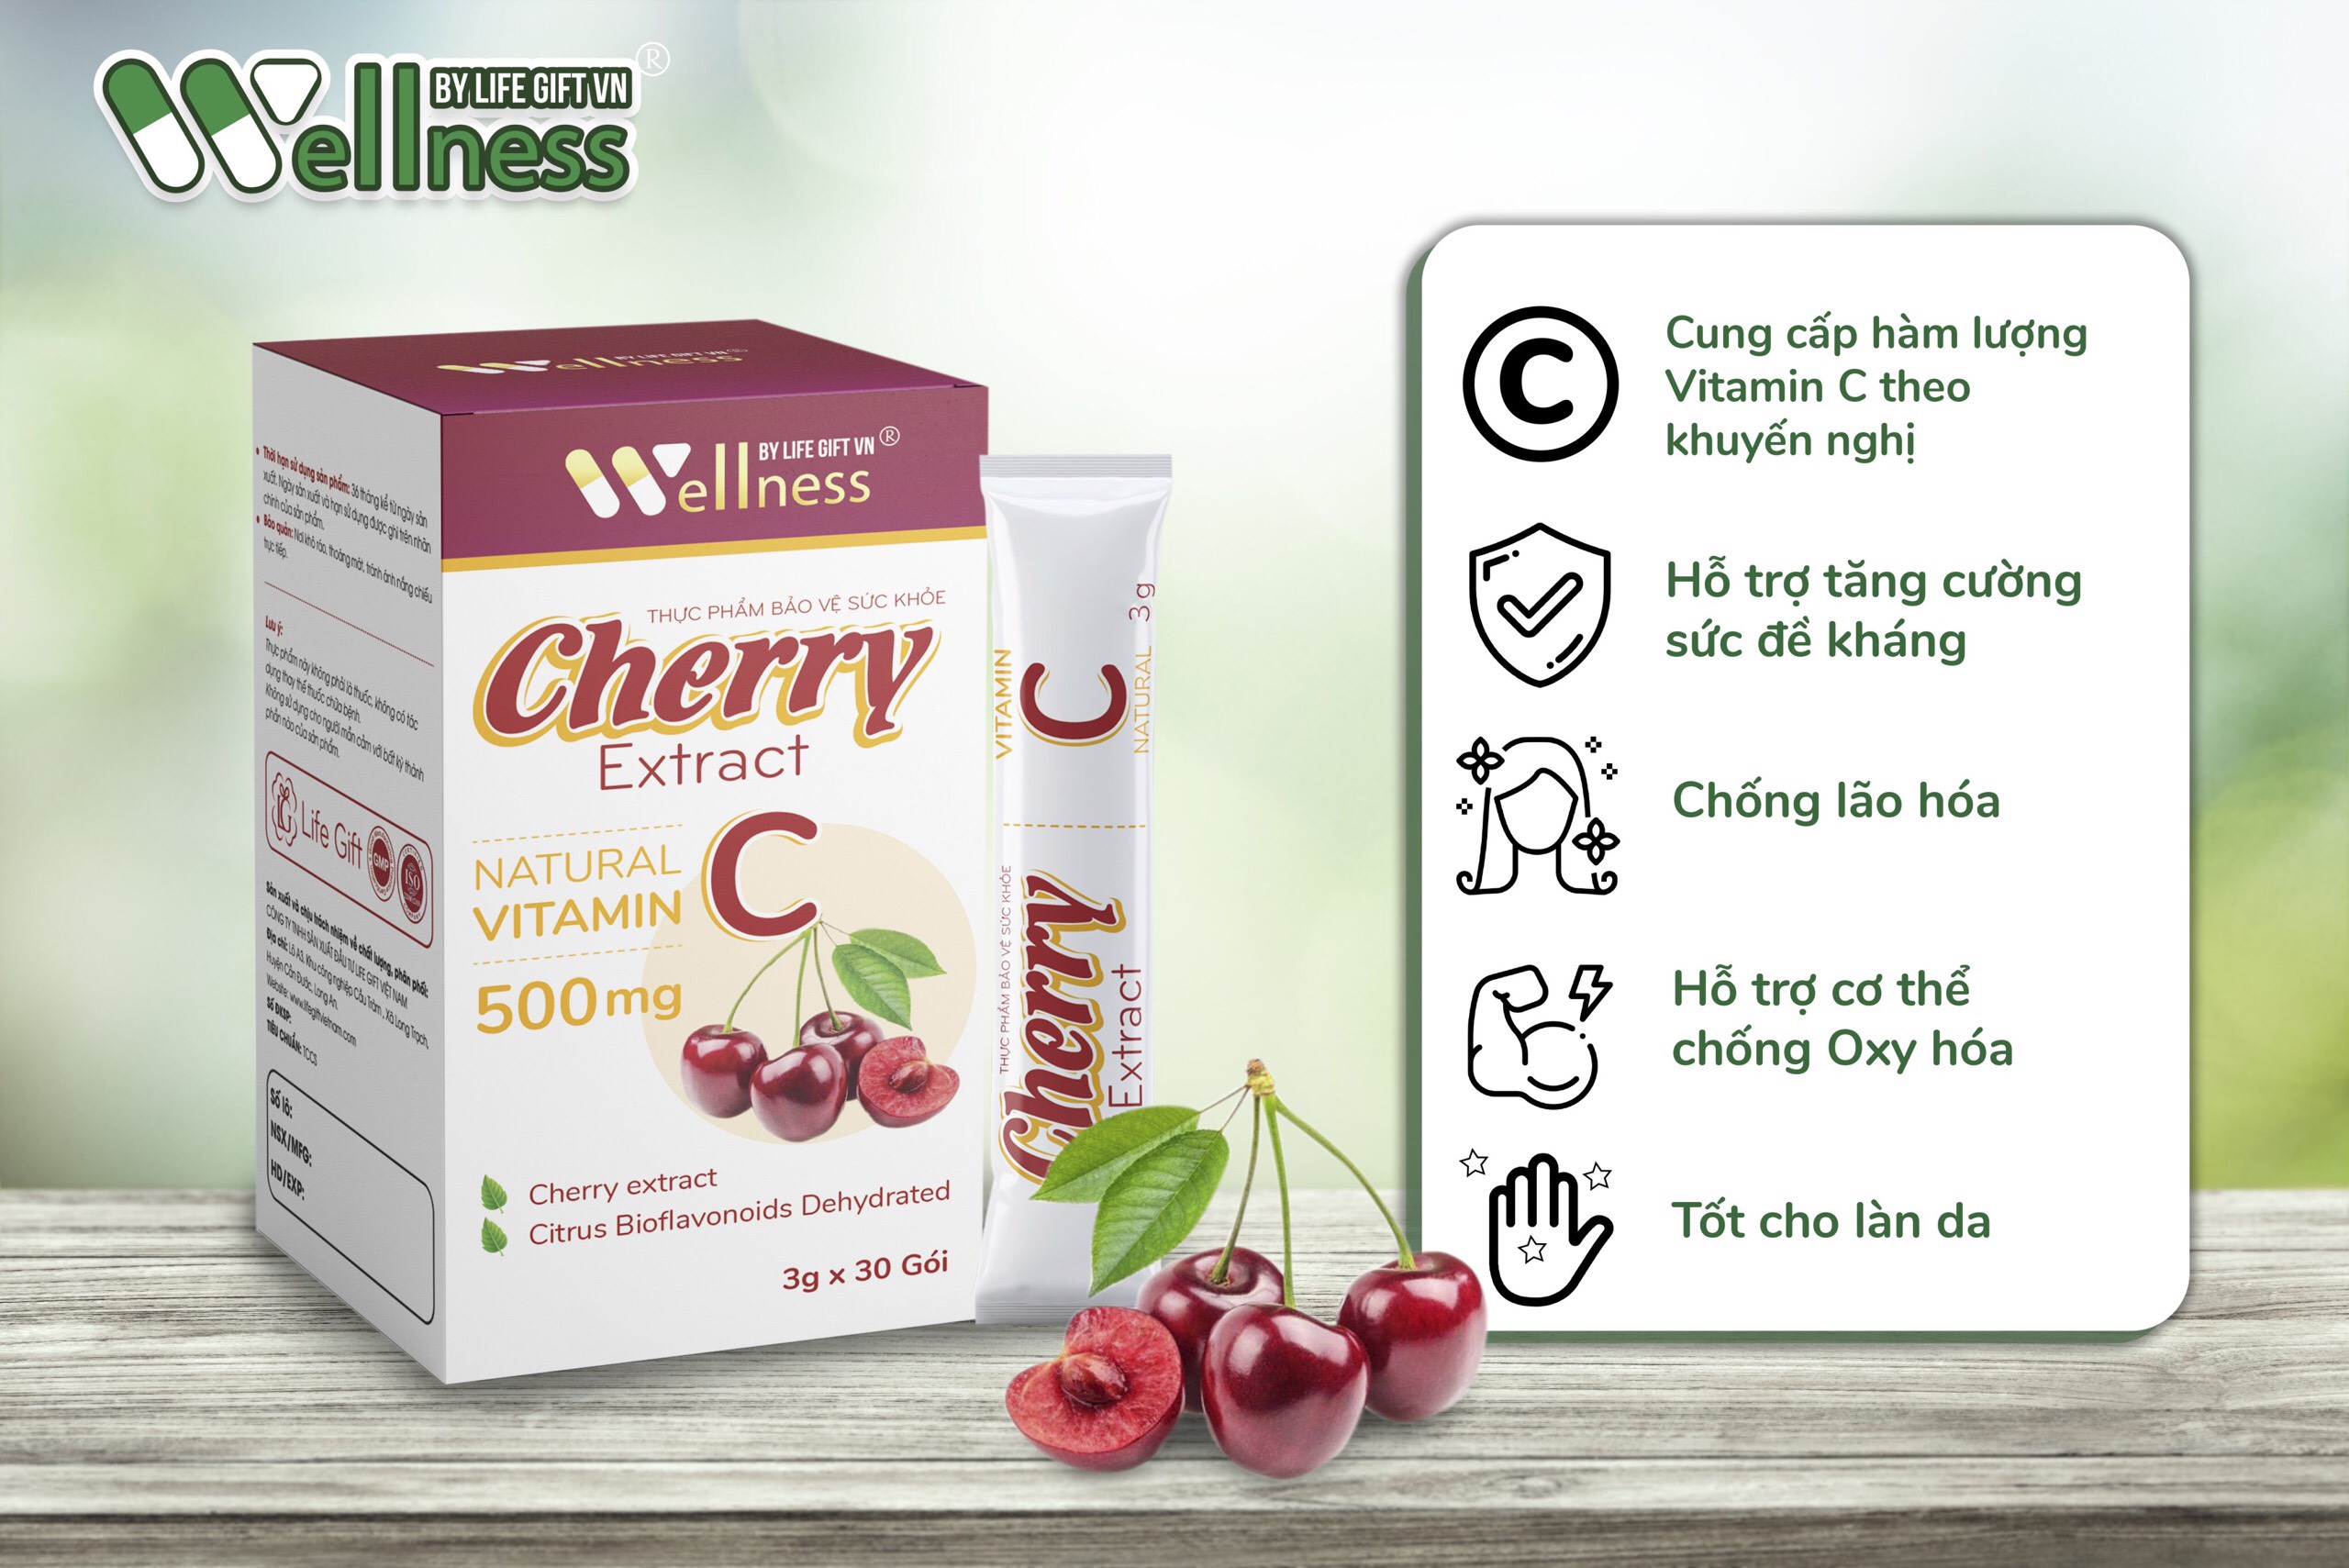 Thực phẩm bảo vệ sức khỏe Cherry Extract 30 gói từ Life Gift Vn, Bổ sung Vitamin C, Hỗ trợ tăng cường sức khỏe, nâng cao sức đề kháng